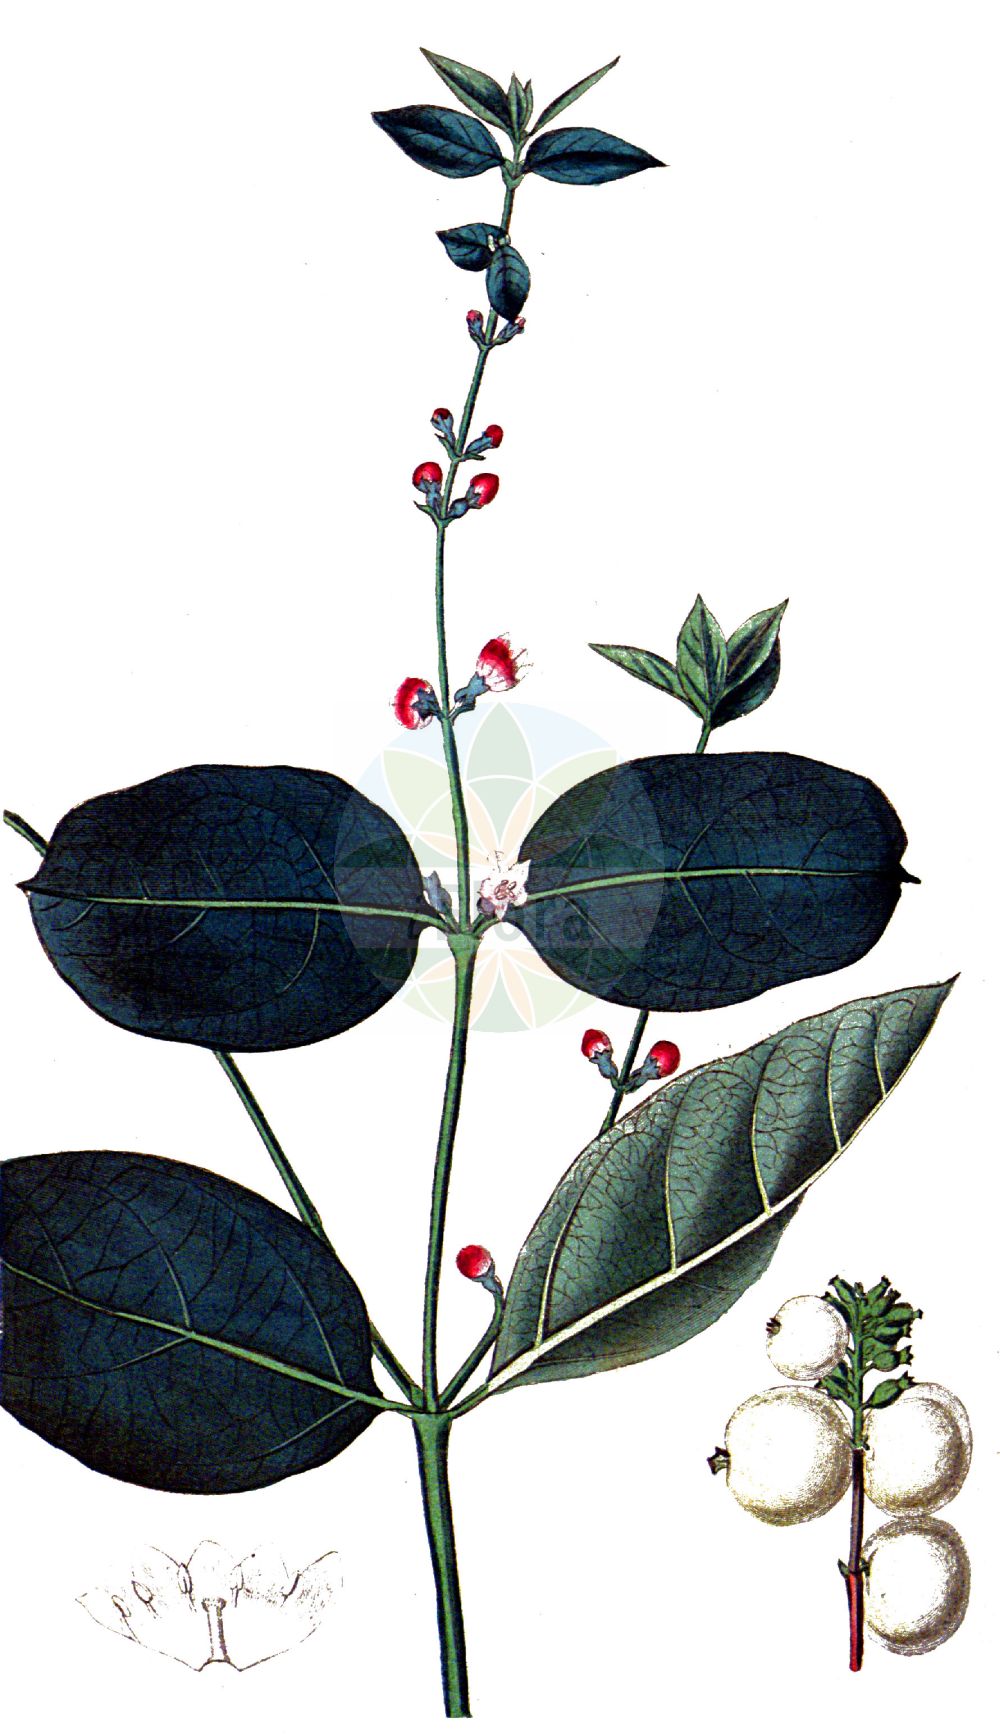 Historische Abbildung von Symphoricarpos albus (Gewöhnliche Schneebeere - Snowberry). Das Bild zeigt Blatt, Bluete, Frucht und Same. ---- Historical Drawing of Symphoricarpos albus (Gewöhnliche Schneebeere - Snowberry). The image is showing leaf, flower, fruit and seed.(Symphoricarpos albus,Gewöhnliche Schneebeere,Snowberry,Symphoricarpos albus,Symphoricarpos racemosus,Symphoricarpos rivularis,Vaccinium album,Gewoehnliche Schneebeere,Knackbeere,Knallerbse,Snowberry,Common Snowberry,Symphoricarpos,Schneebeere,Snowberry,Caprifoliaceae,Geißblattgewächse,Honeysuckle family,Blatt,Bluete,Frucht,Same,leaf,flower,fruit,seed,Curtis Botanical Magazine (1787f))